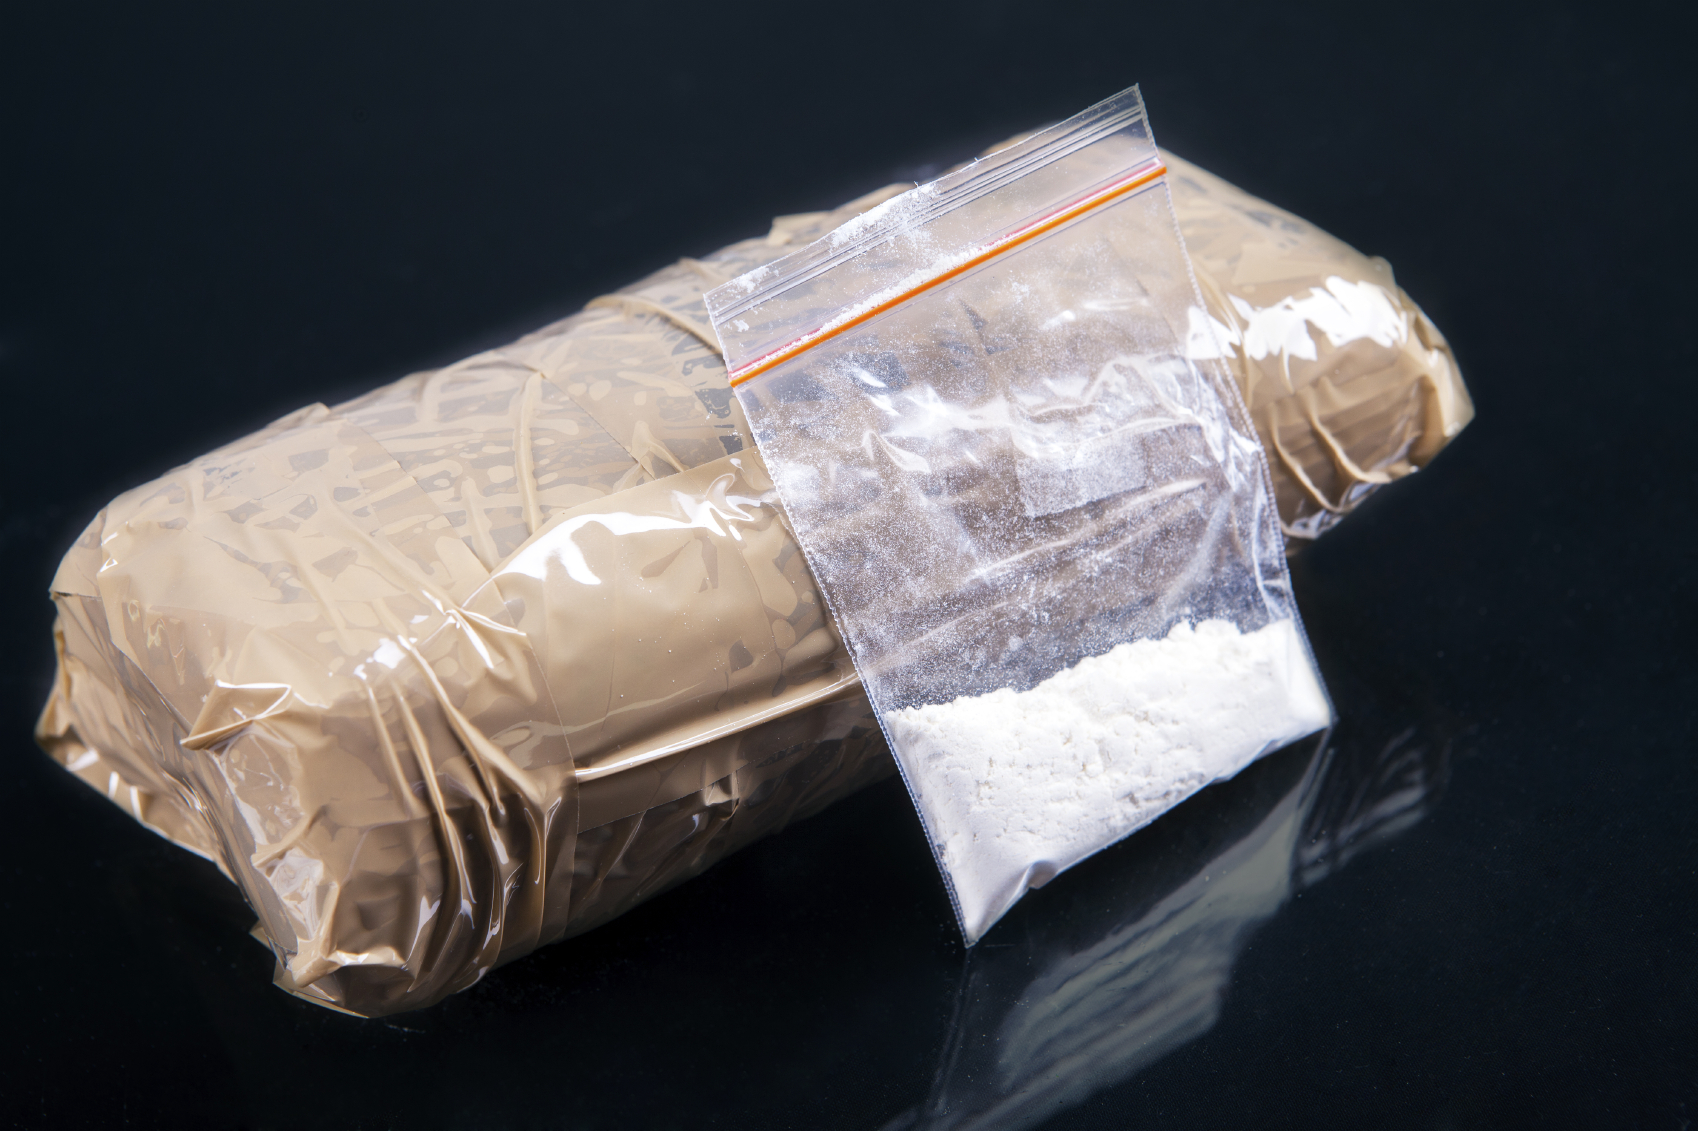 A bag of cocaine powder